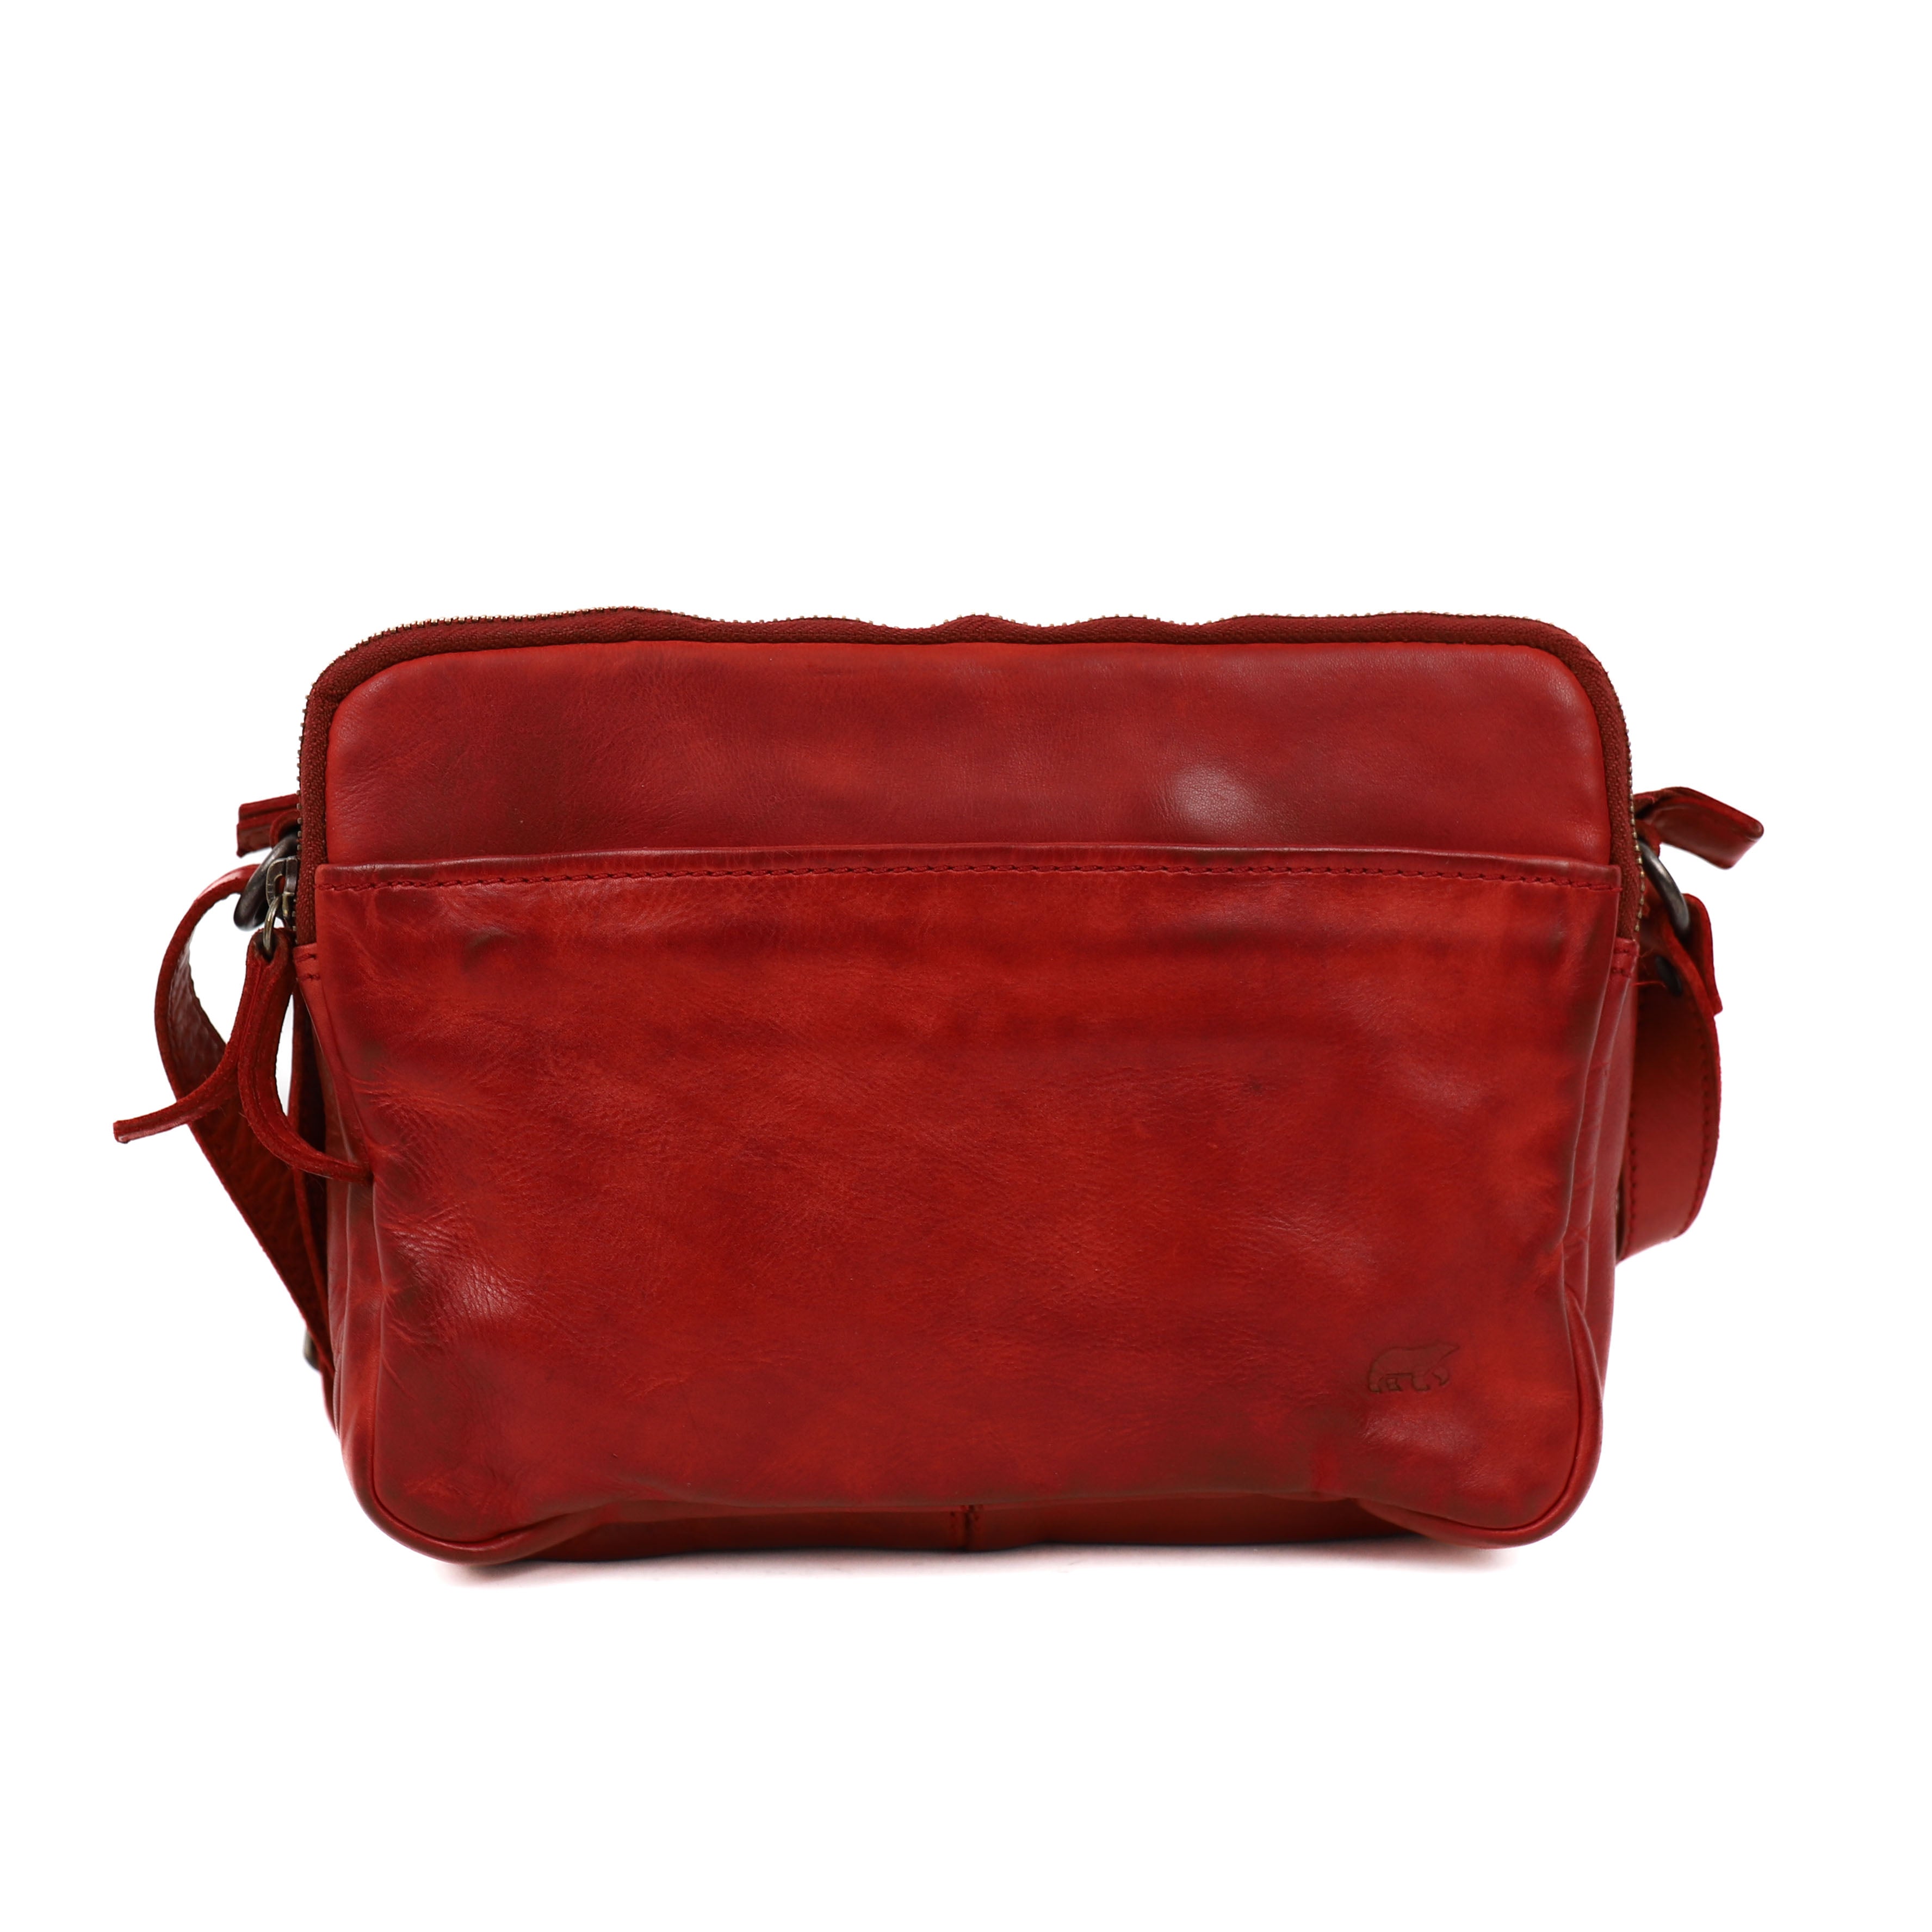 Shoulder bag 'Vieve' red